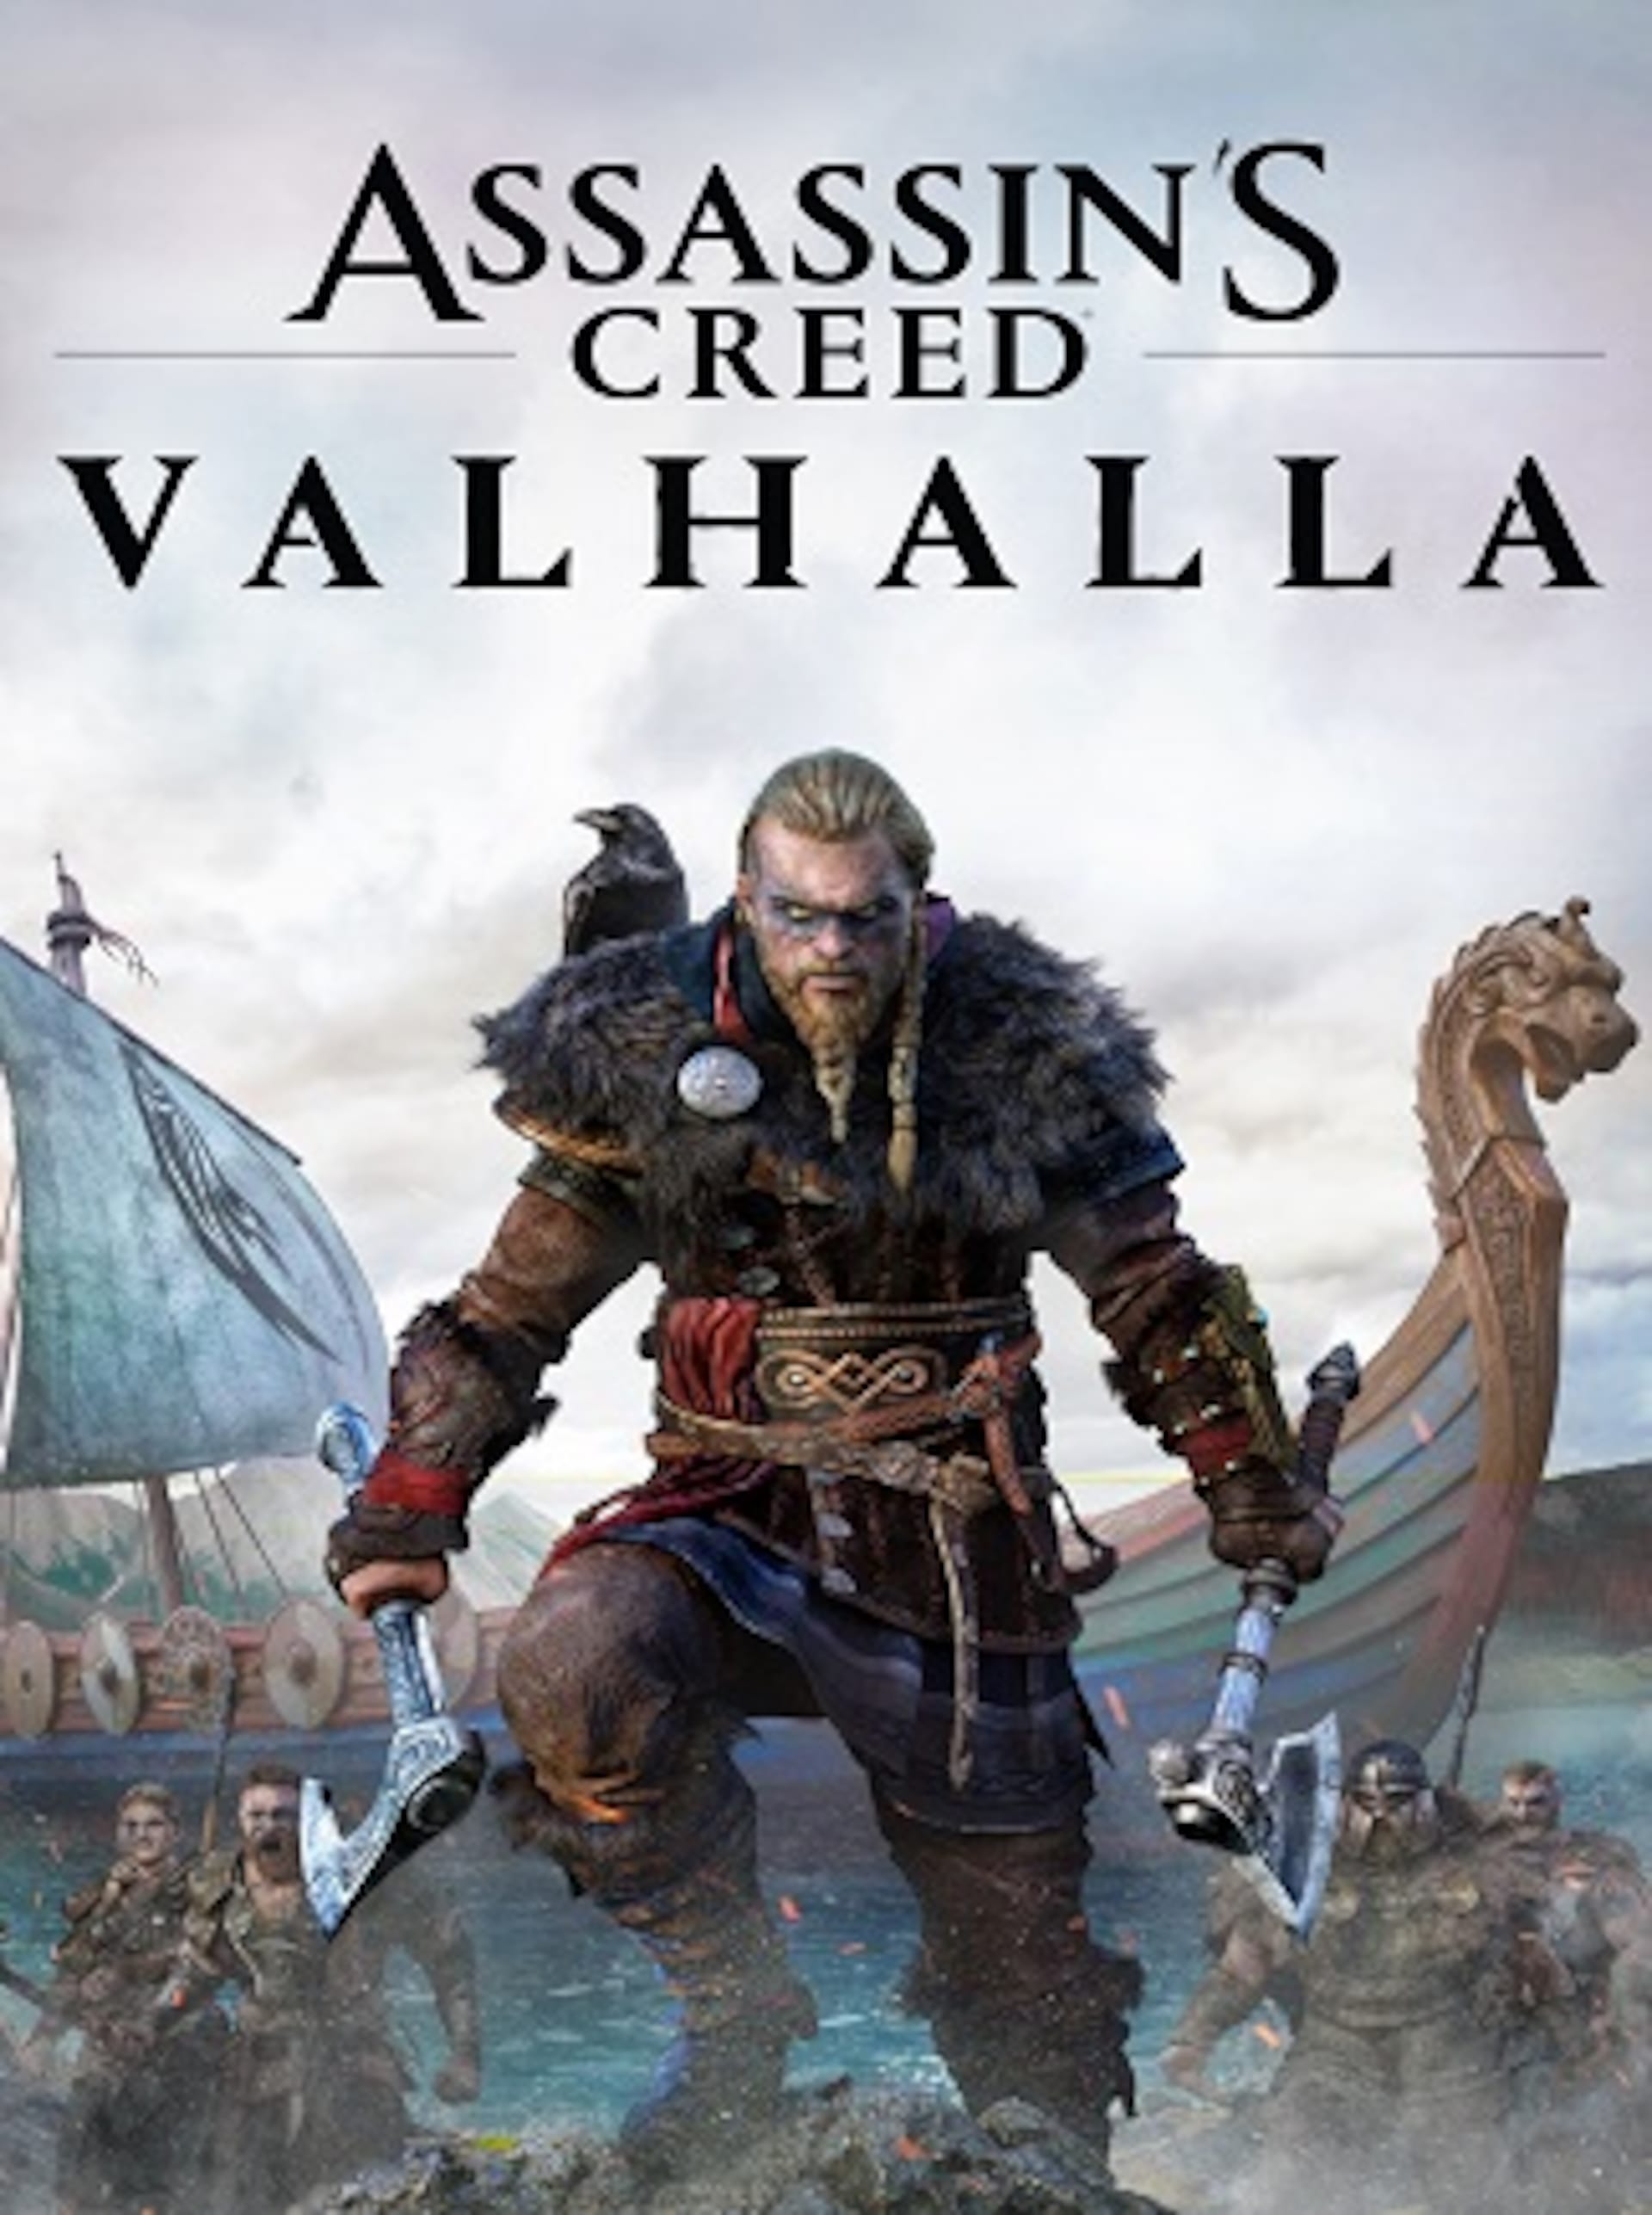 Steam Deck Gameplay - Assassin's Creed Valhalla - Ubisoft Connect